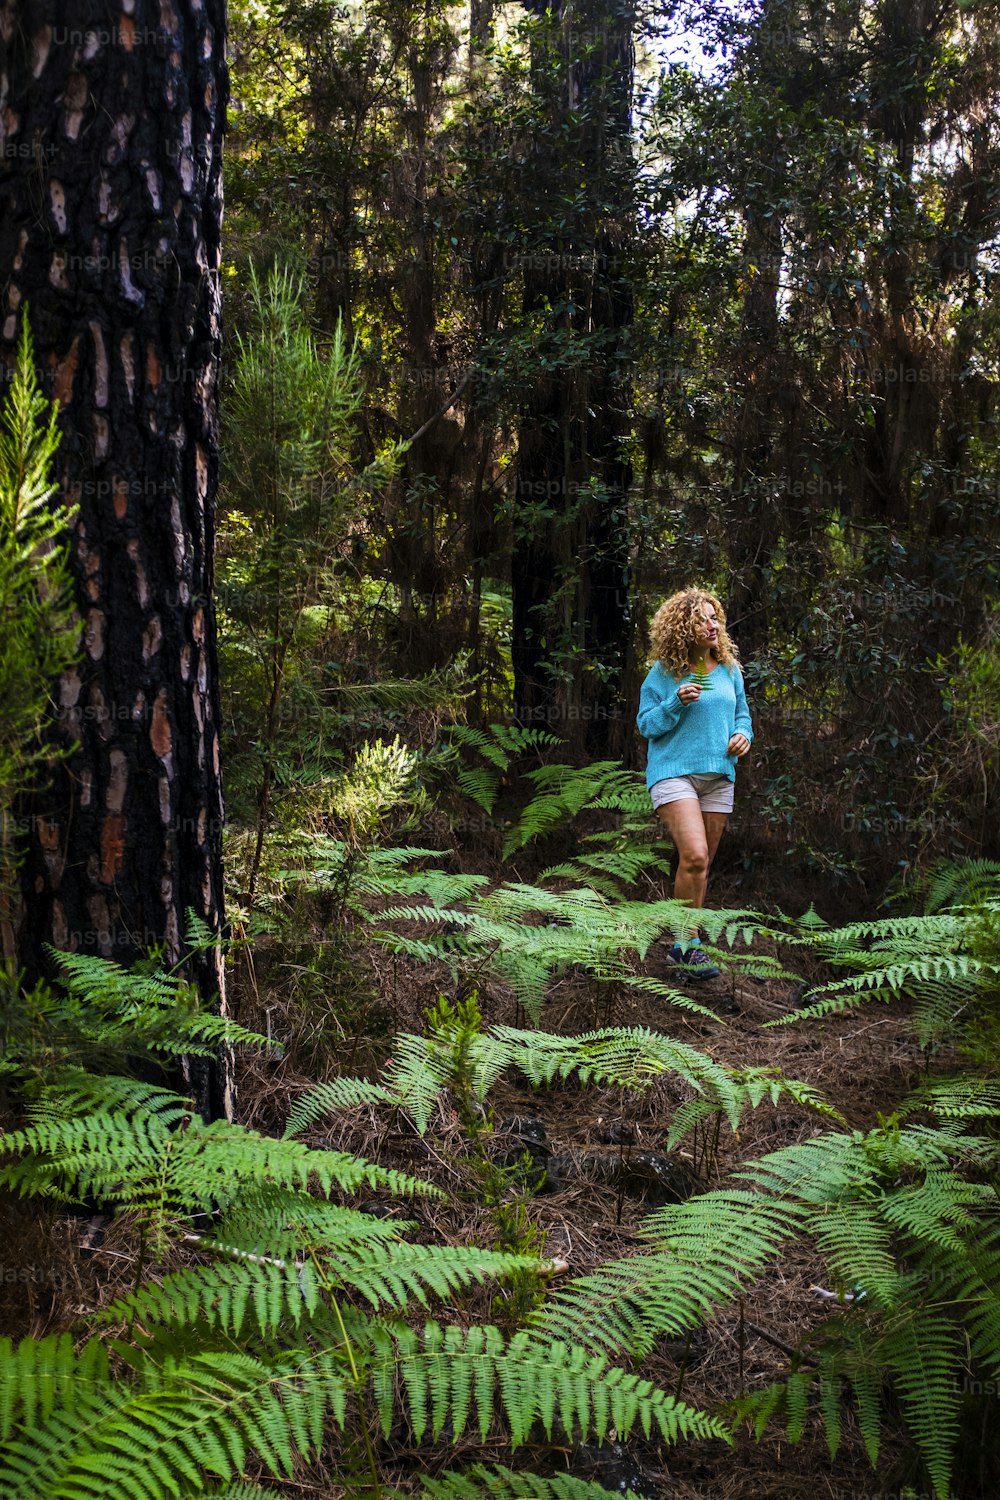 Glückliche junge Frau spazieren gehen und die Freizeitaktivitäten im Freien im grünen Schönheit tropischen Wald genießen - Mensch und Umwelt - retten und pflegen Sie den Planeten Erde Konzept mit alternativem Tourismus